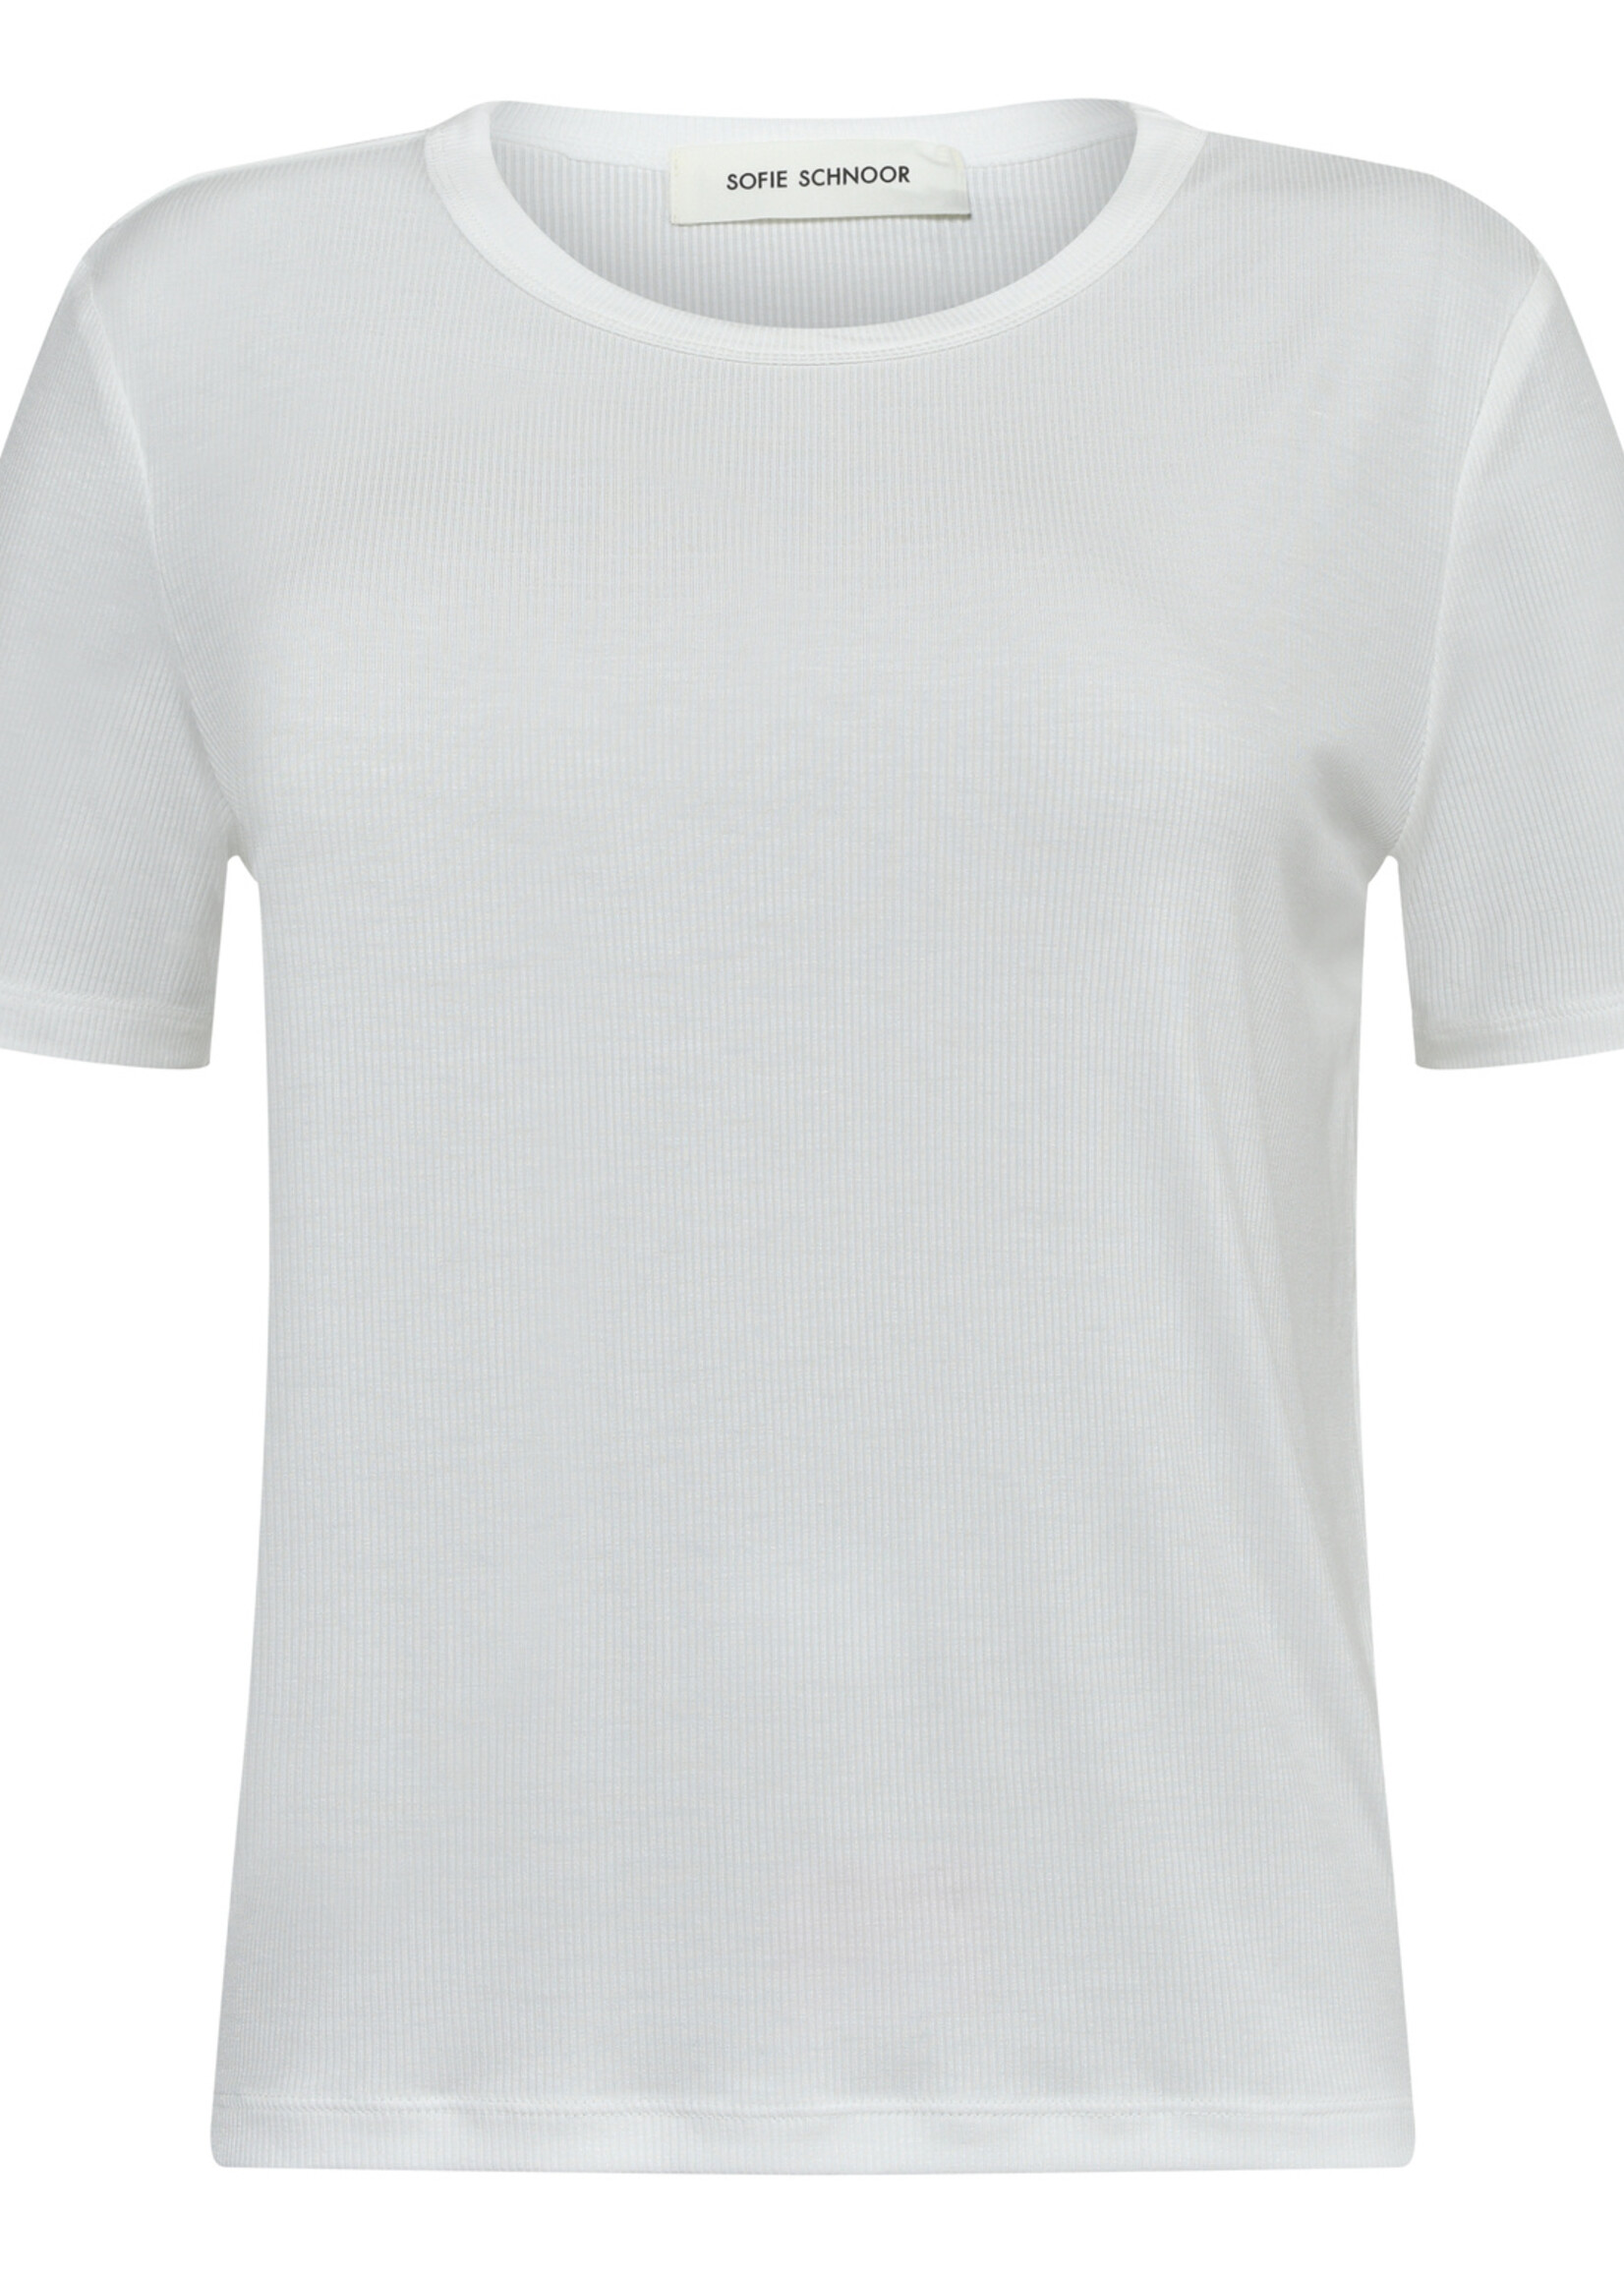 Sofie Schnoor SNOS414 T-Shirt - White